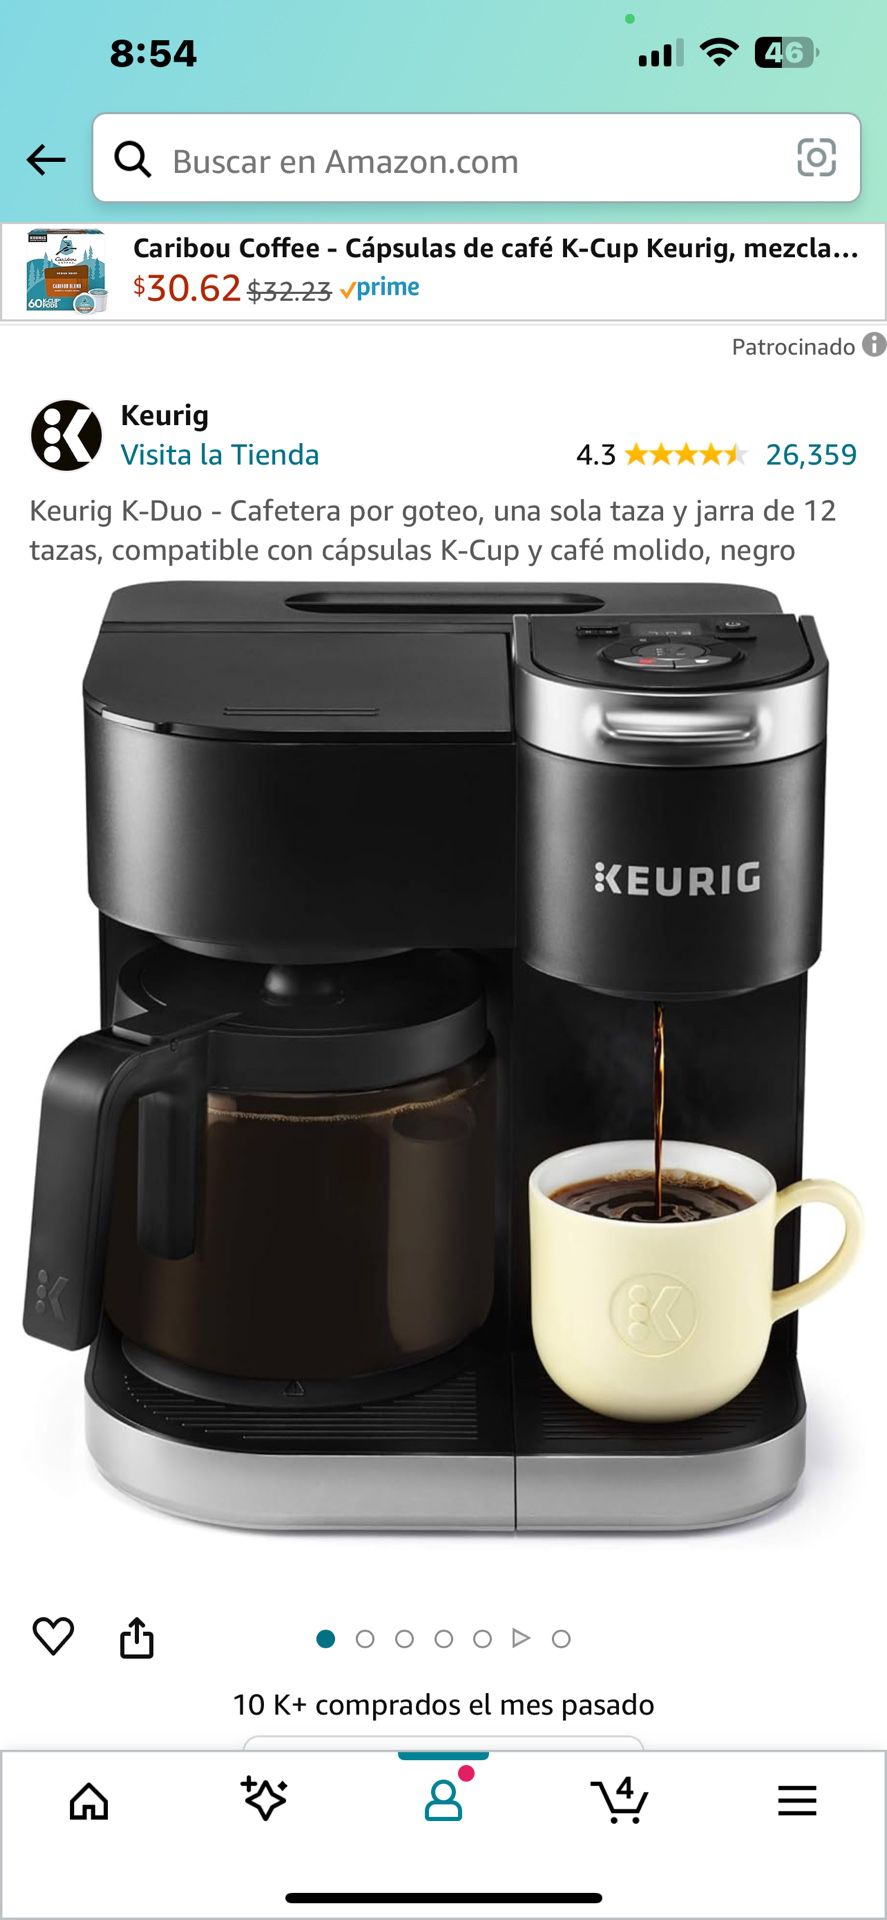 Keurig K-Duo - Cafetera por goteo, una sola taza y jarra de 12 tazas, compatible con cápsulas K-Cup y café molido, negro